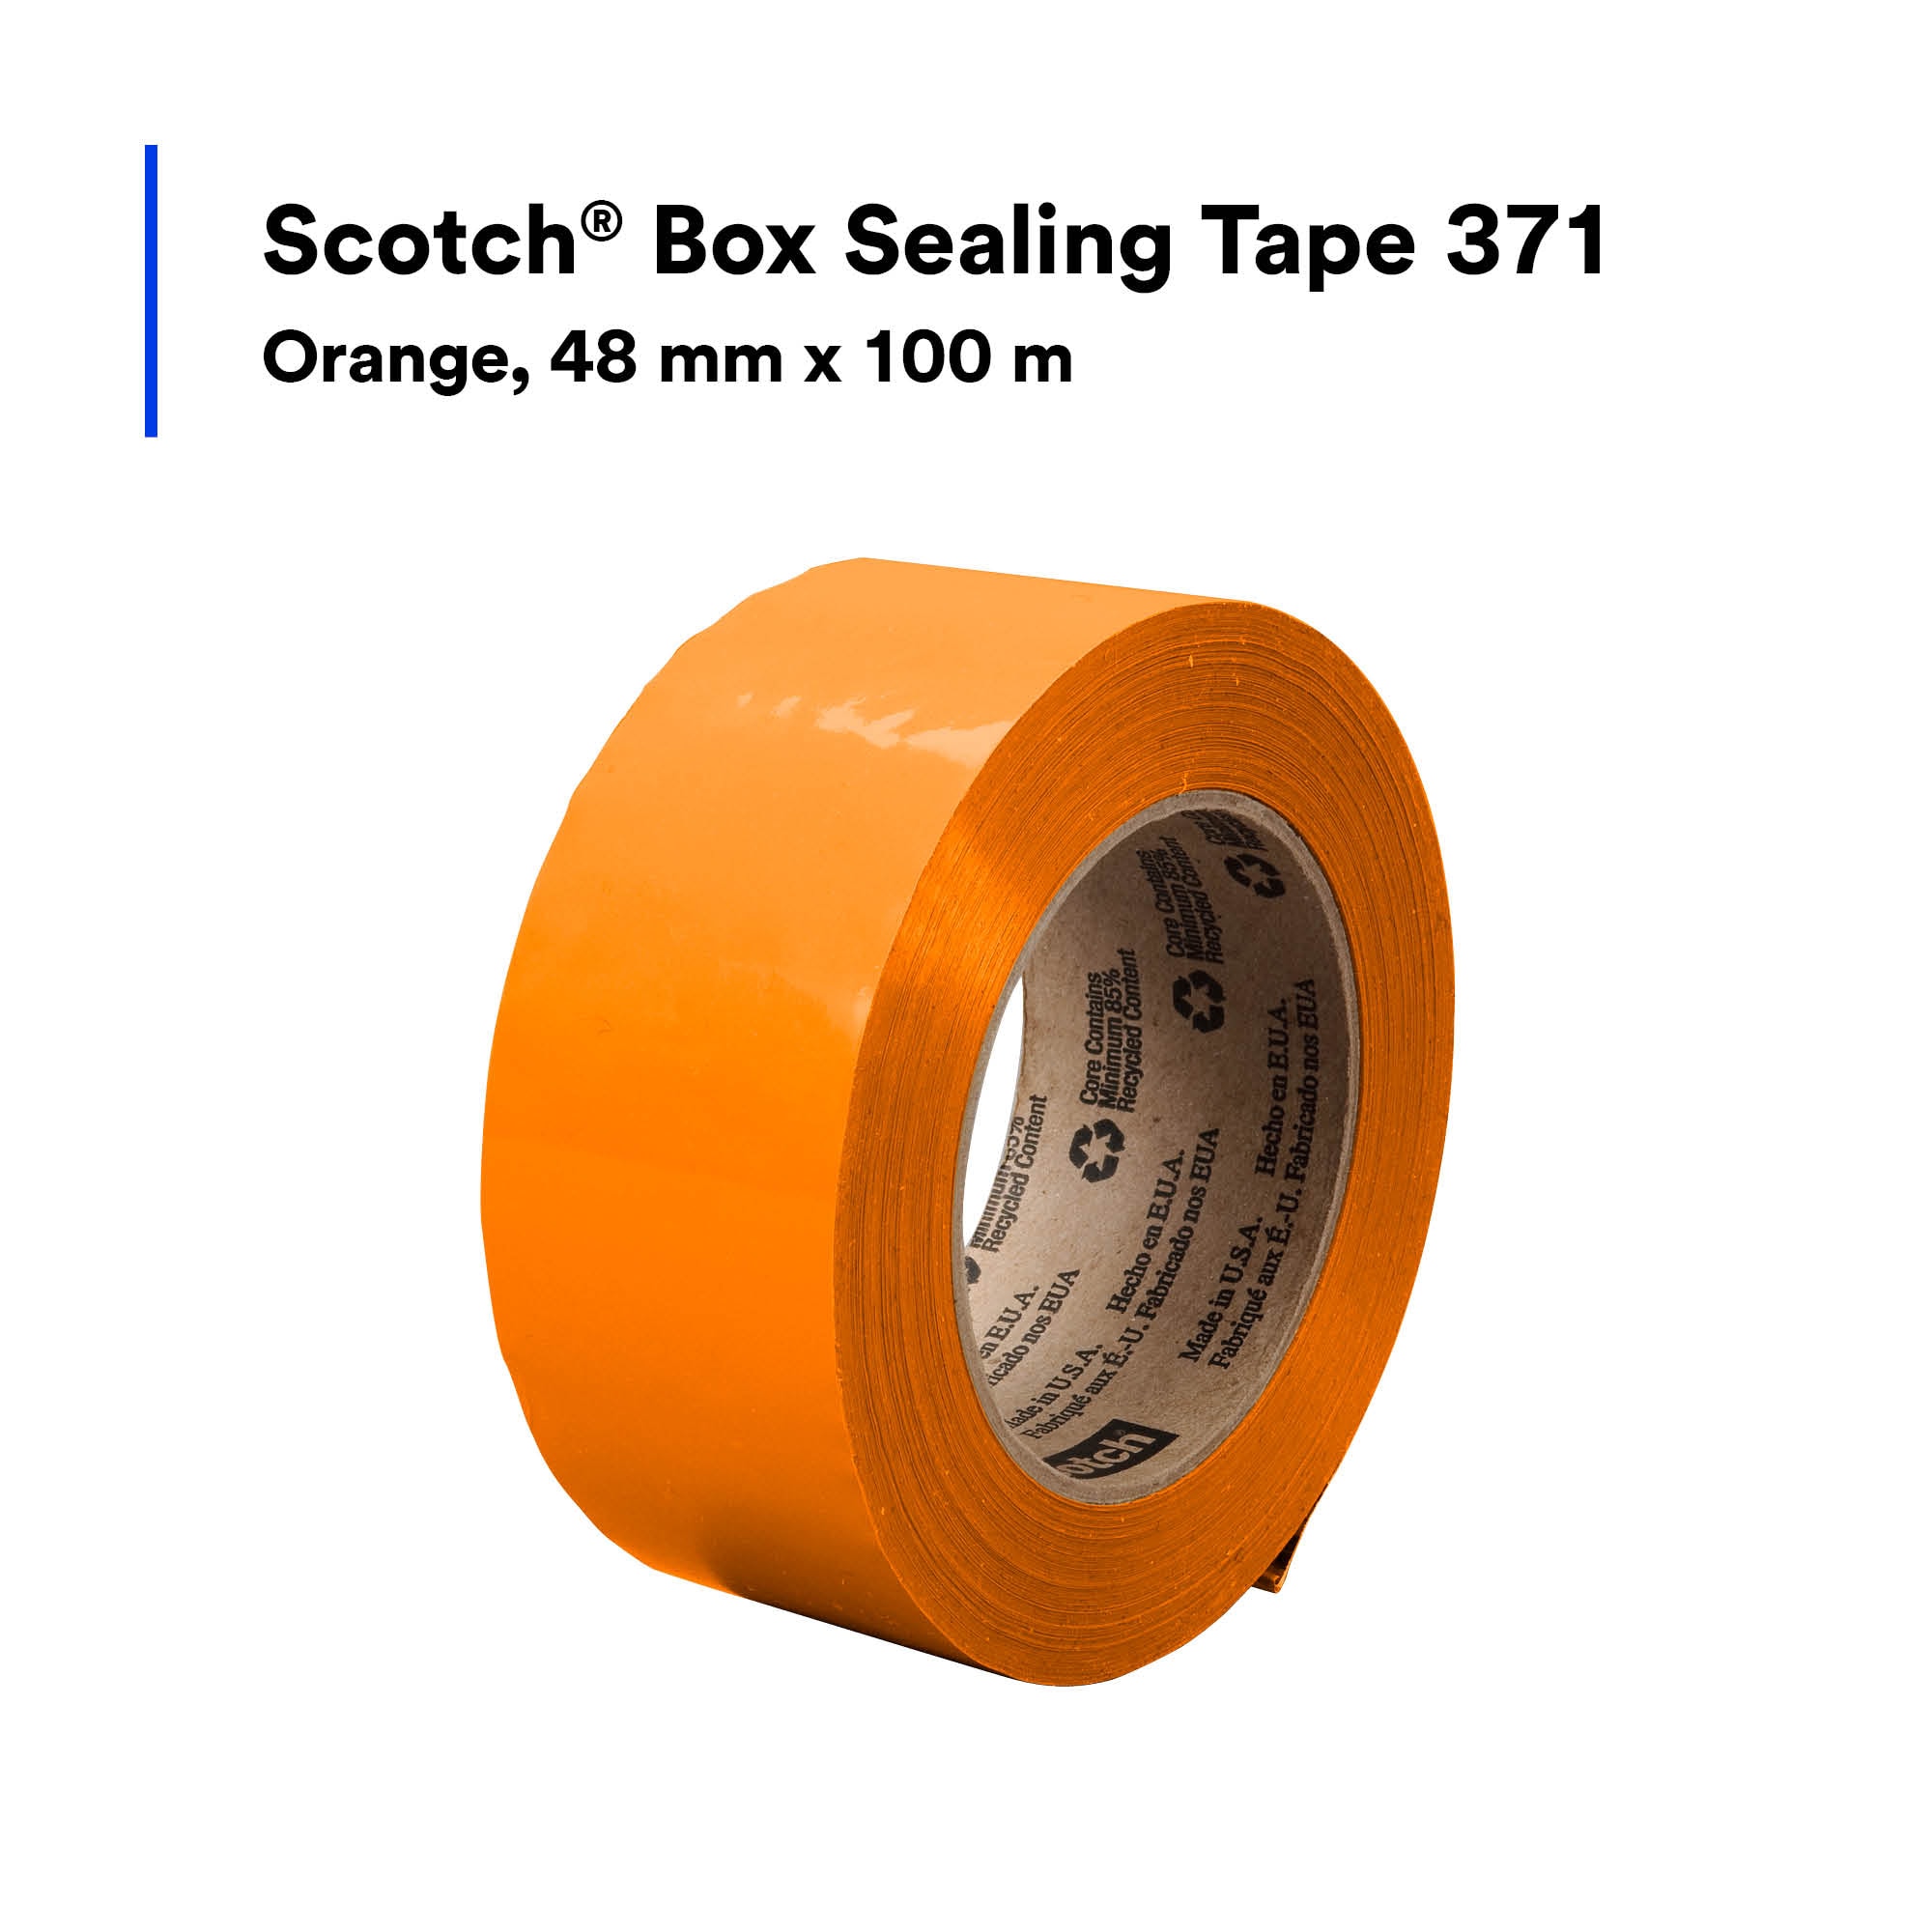 SKU 7010378316 | Scotch® Box Sealing Tape 371